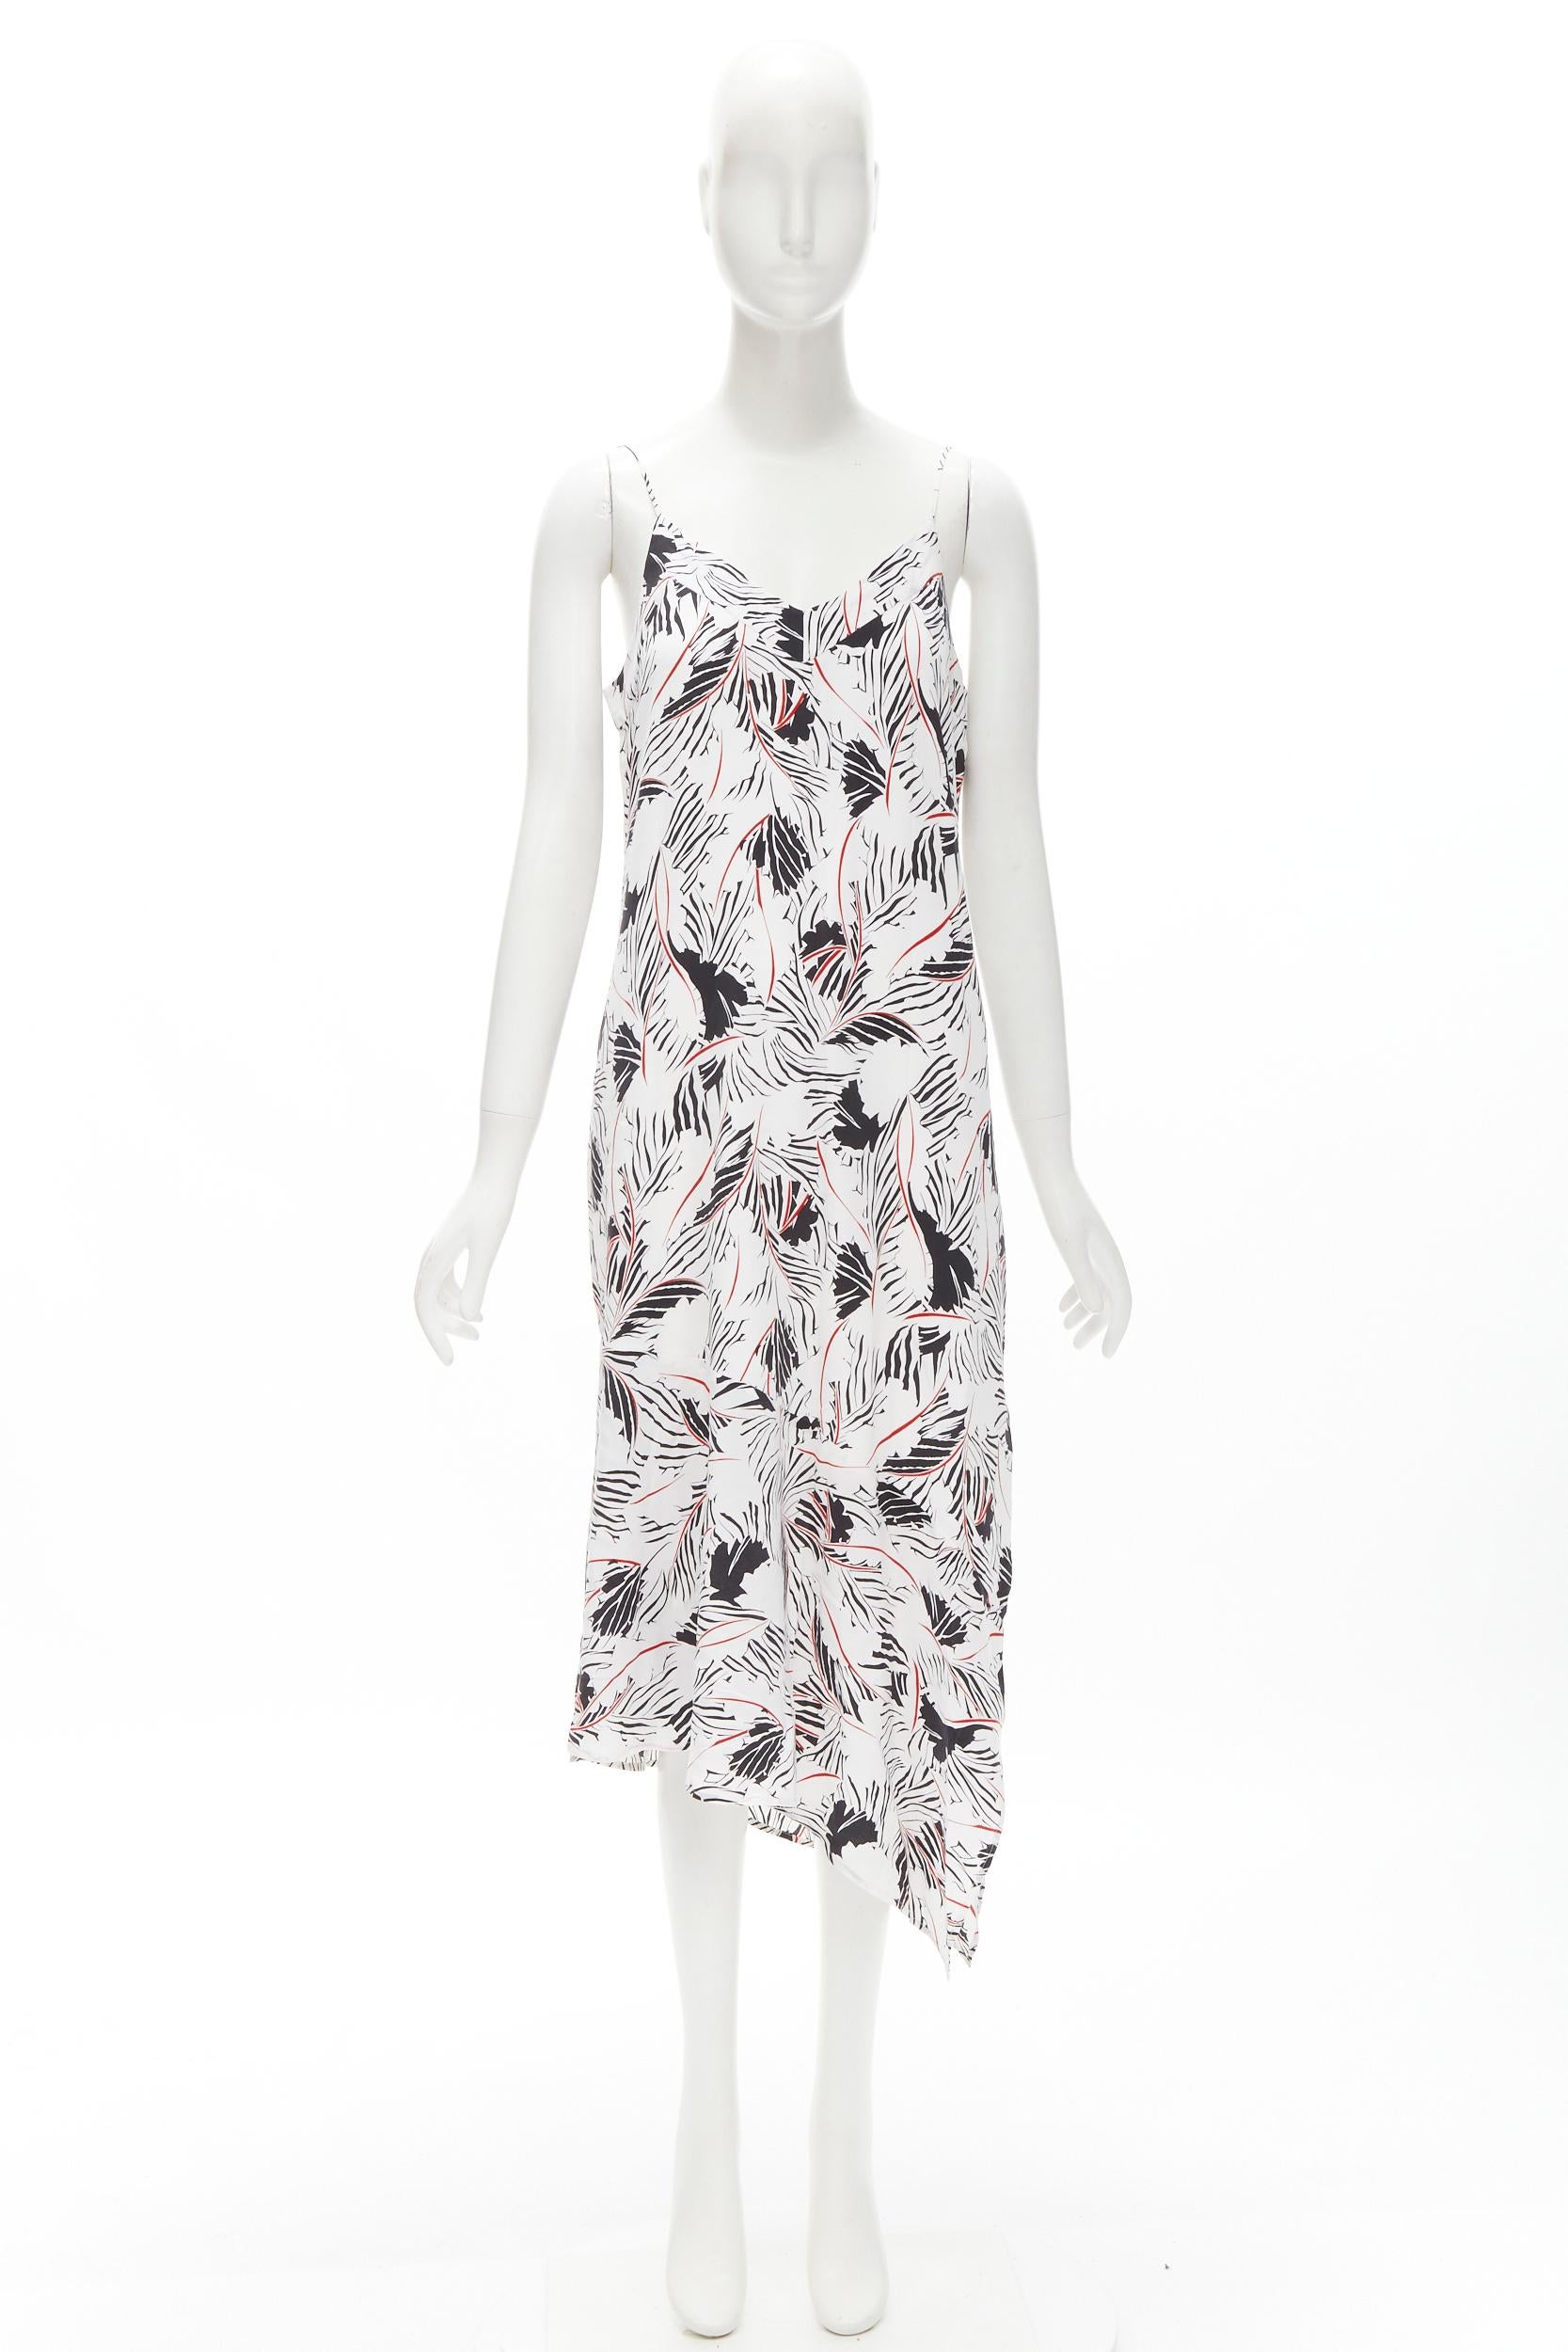 EQUIPMENT FEMME 100% silk white black red graphic print asymmetric slip dress S For Sale 2